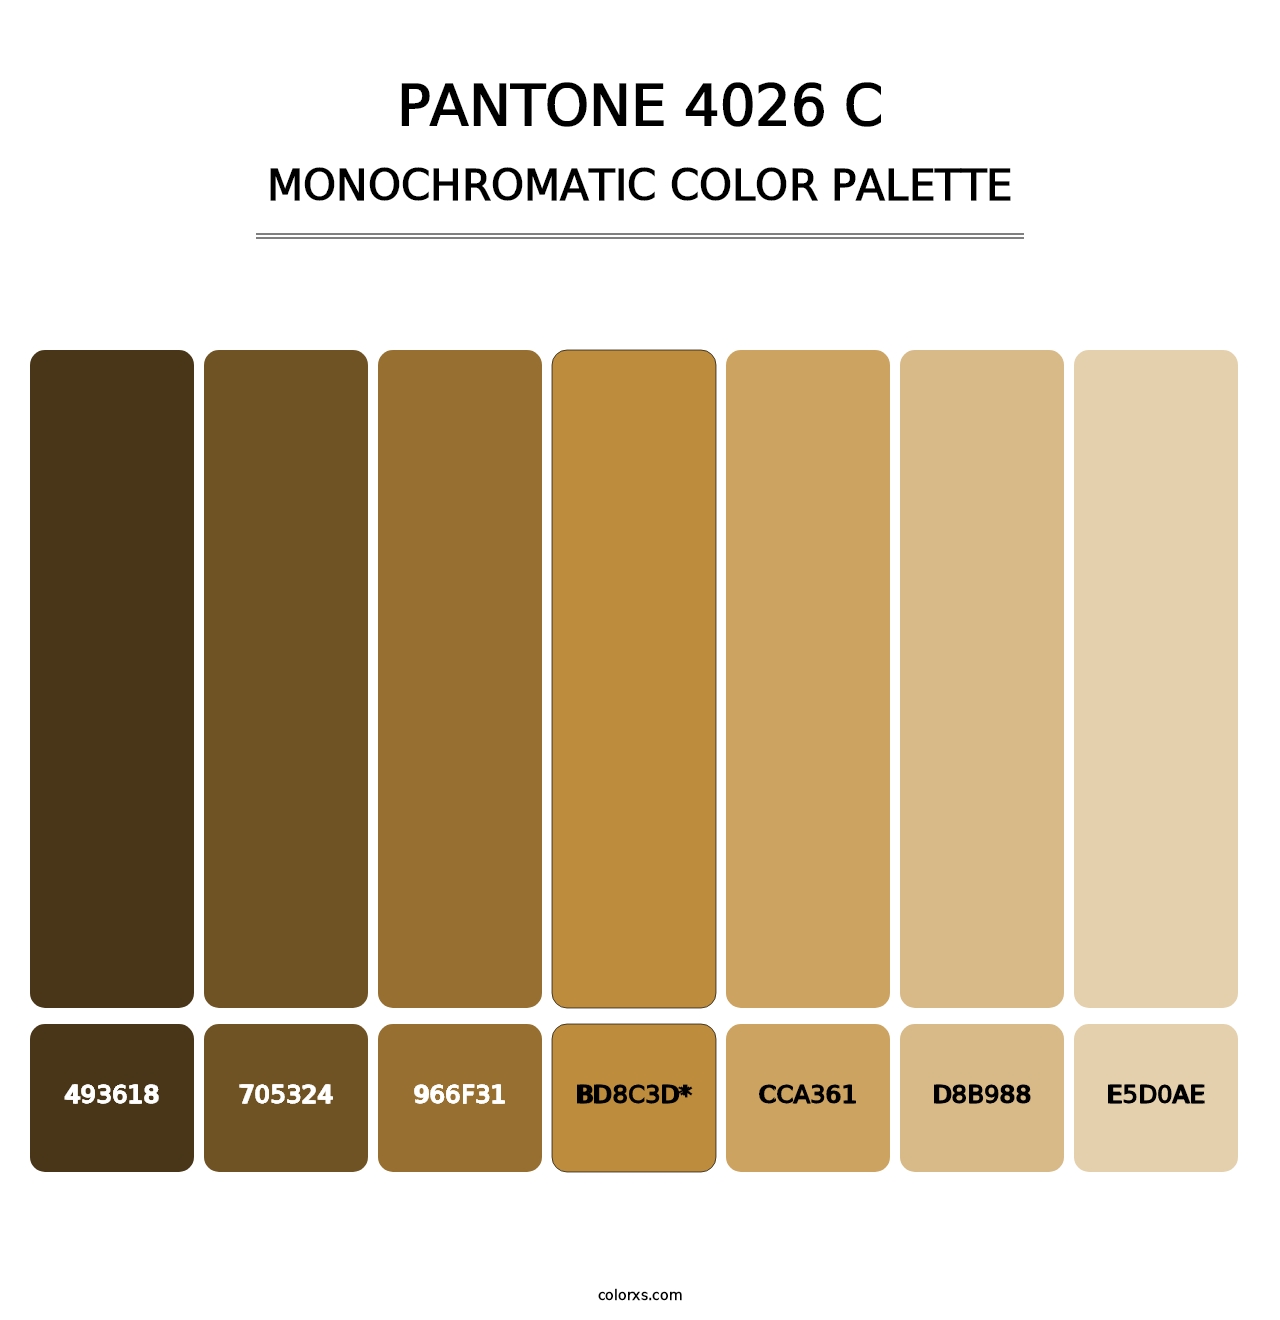 PANTONE 4026 C - Monochromatic Color Palette